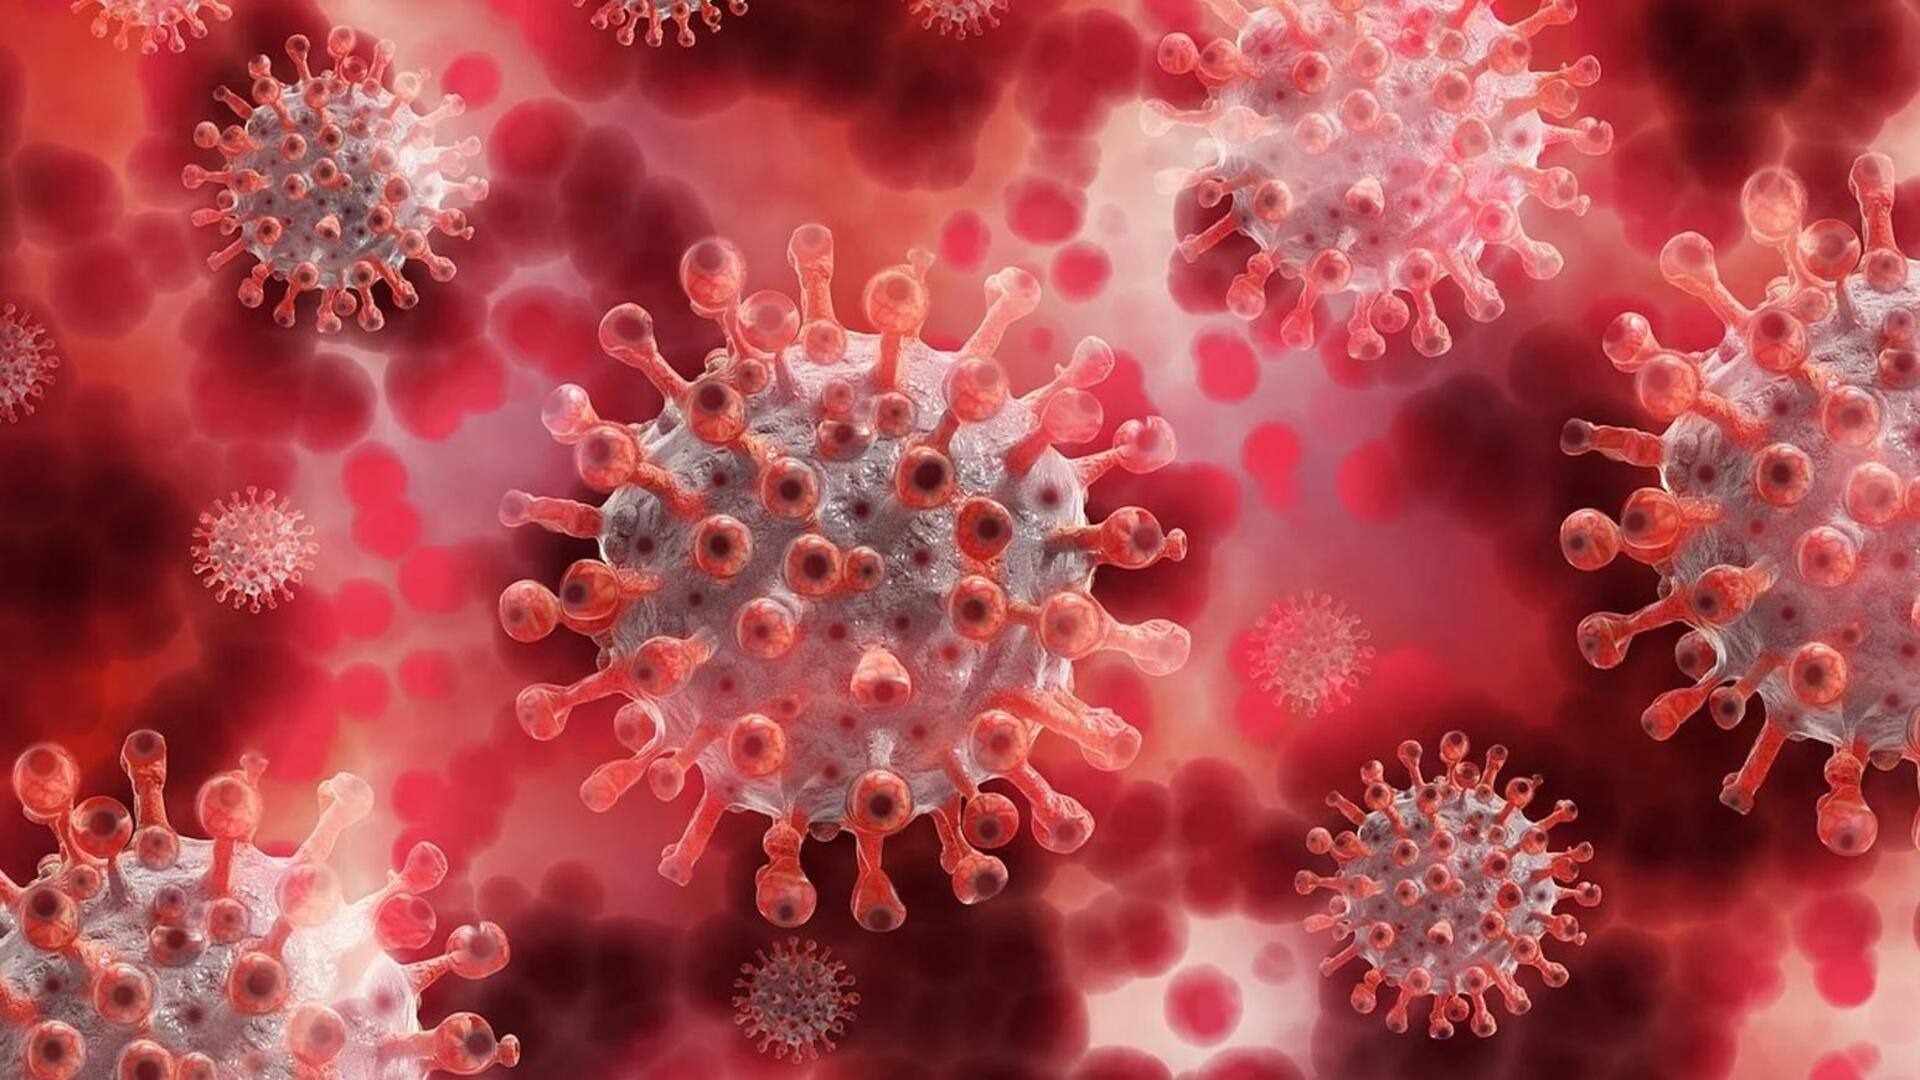 वैज्ञानिकों का दावा, HIV को कोशिकाओं से कर सकते हैं अलग